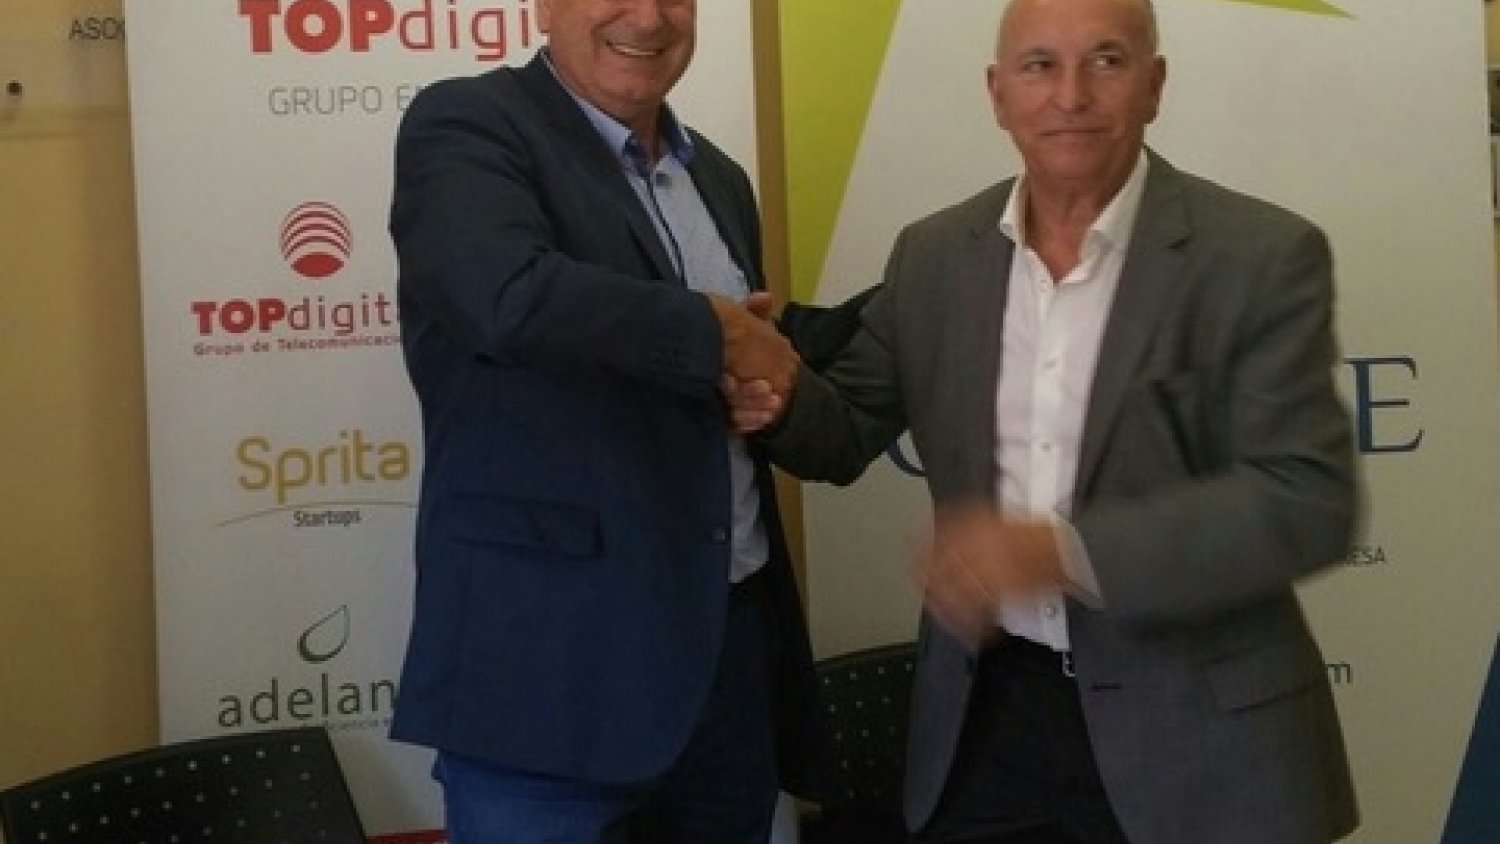 El Grupo TOPdigital firma un acuerdo de colaboración con CEPYME